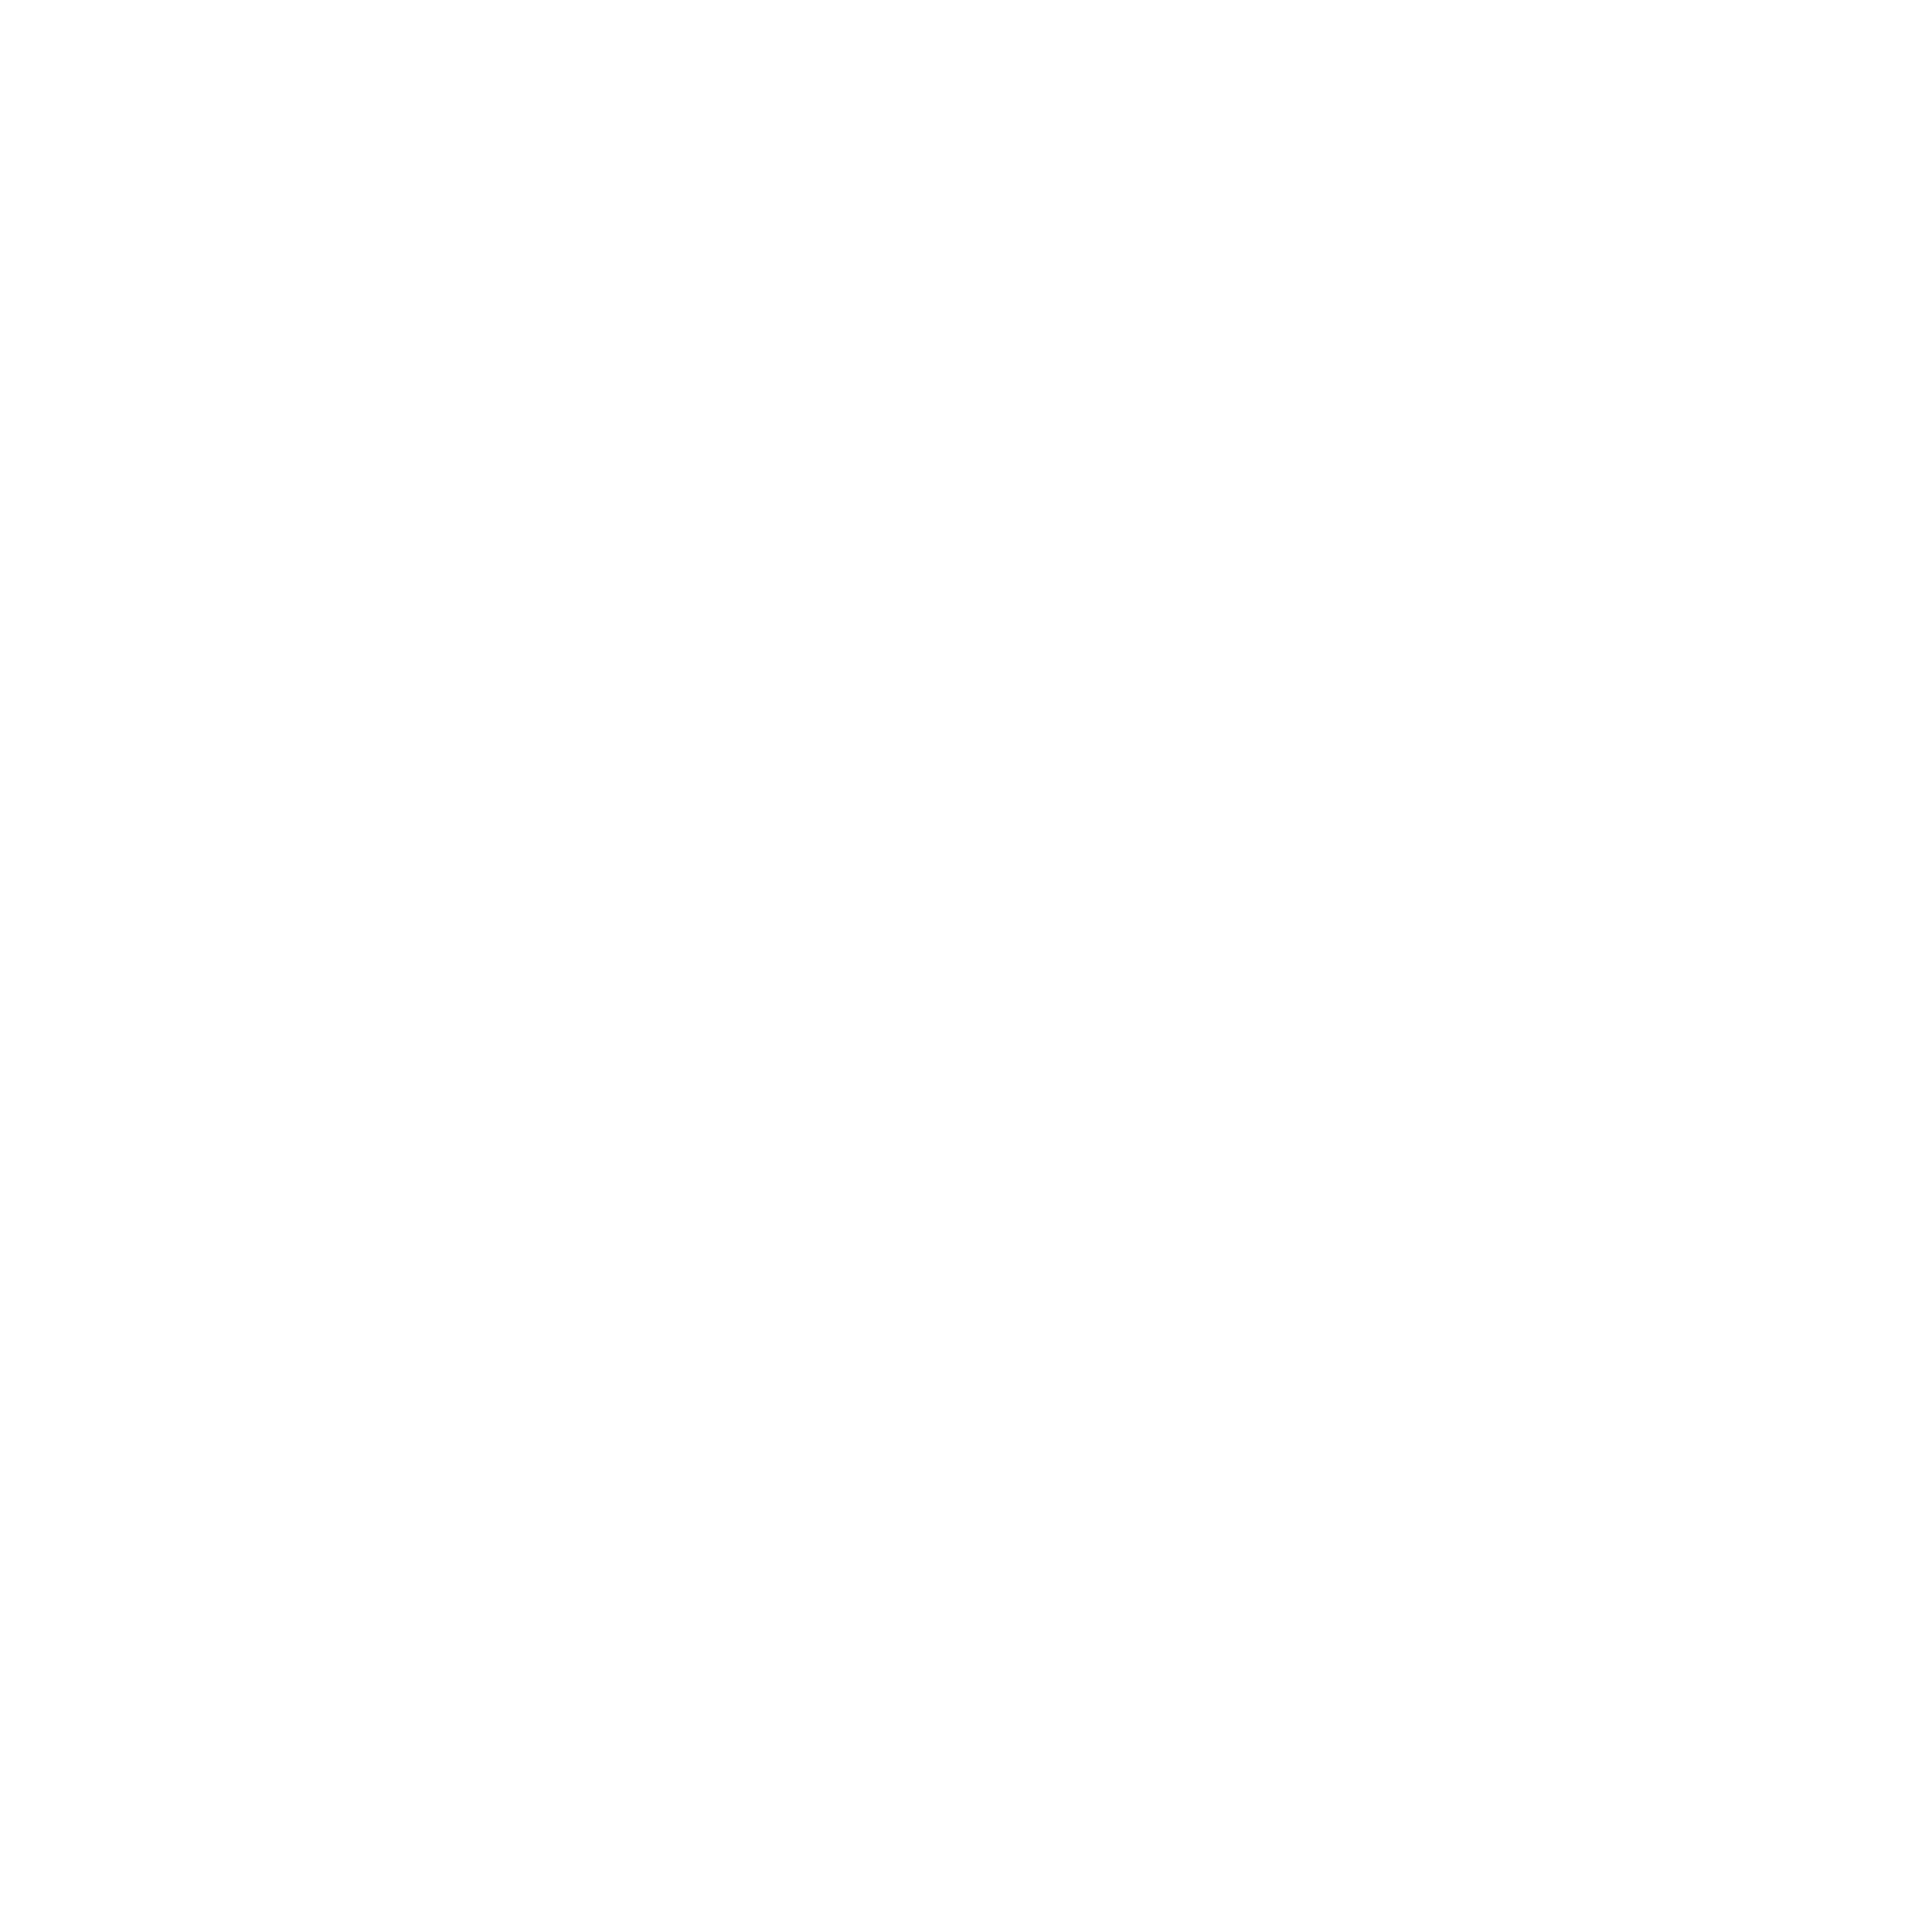 aya_segev_logo_final4